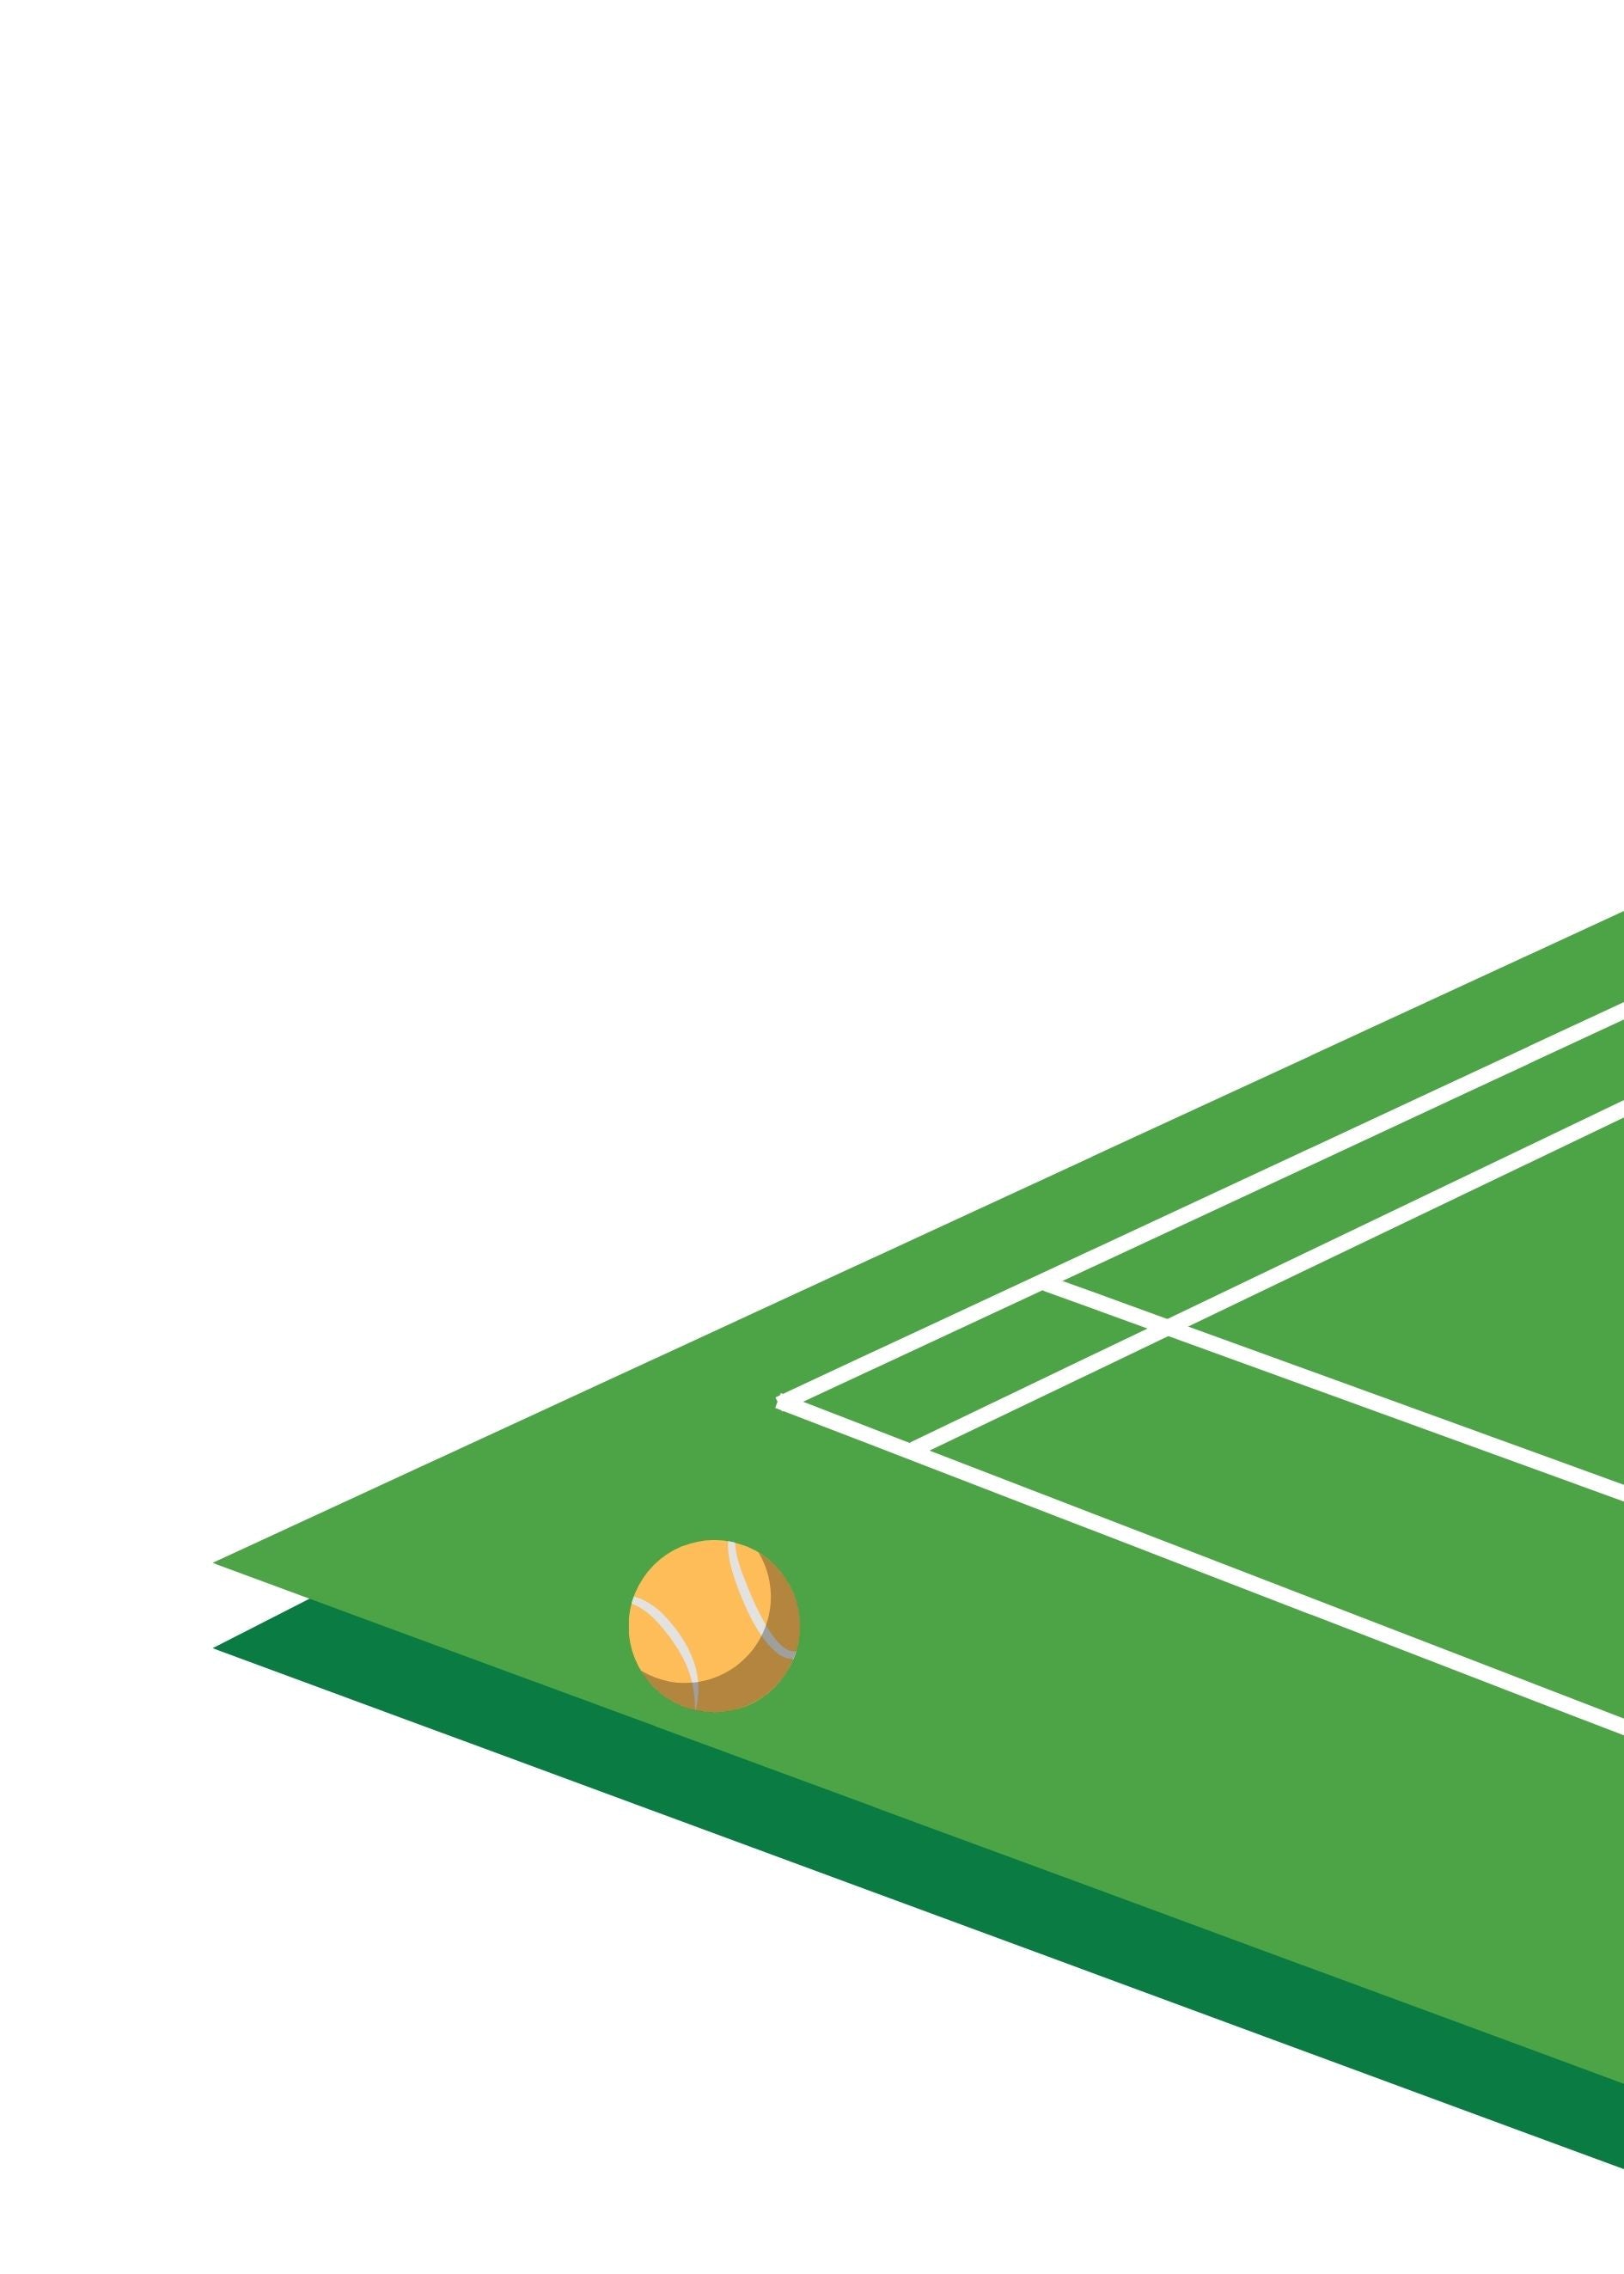 Tennis field green poster